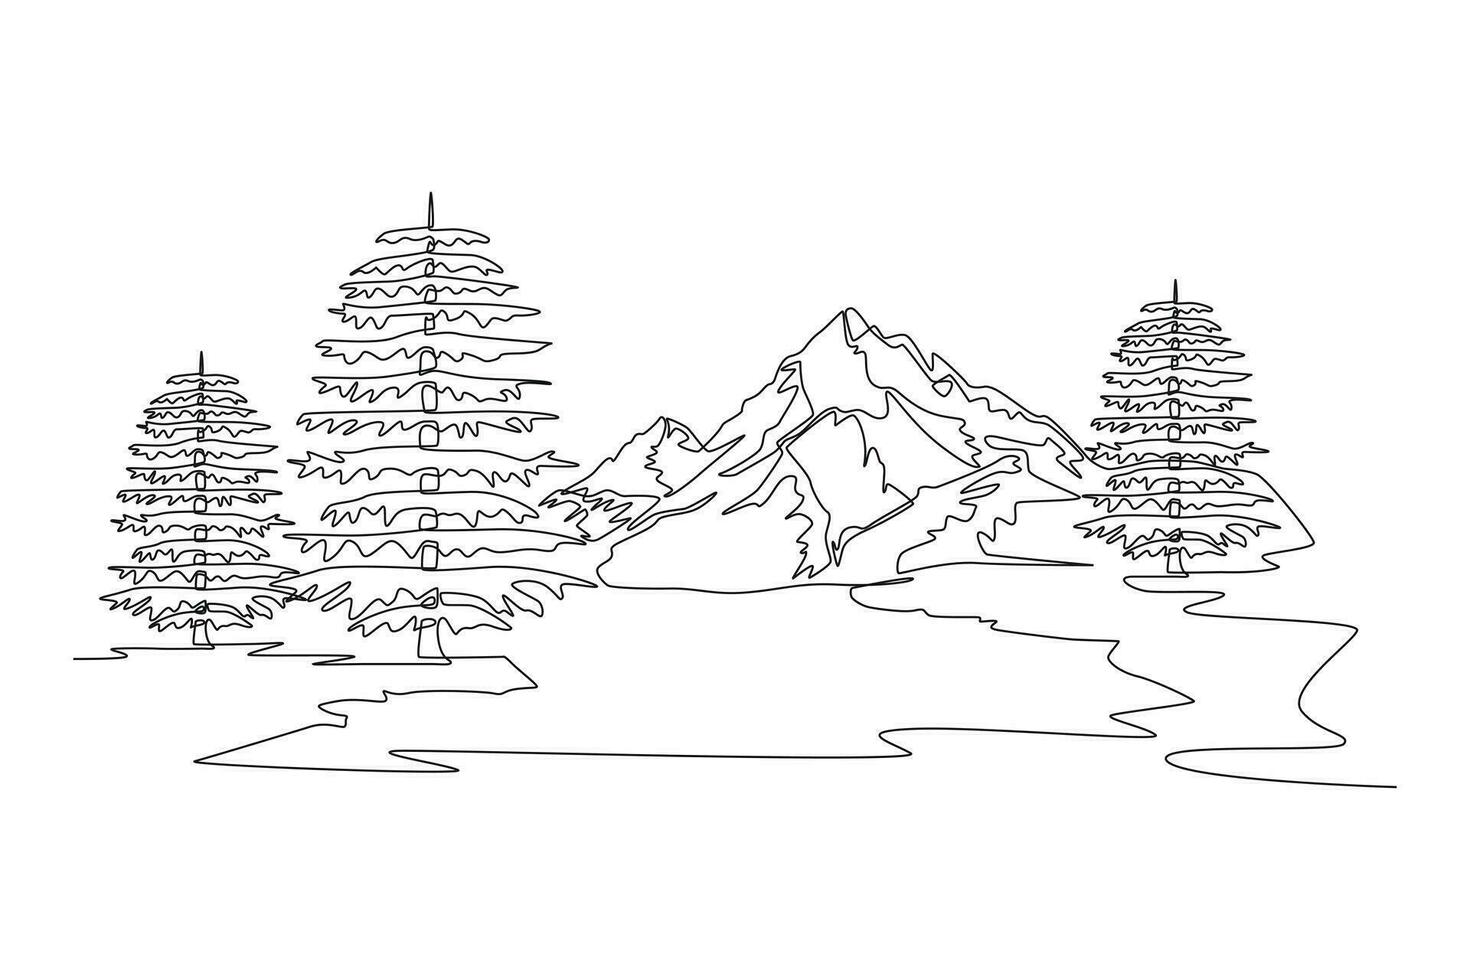 Single einer Linie Zeichnung Wald Konzept. kontinuierlich Linie zeichnen Design Grafik Vektor Illustration.